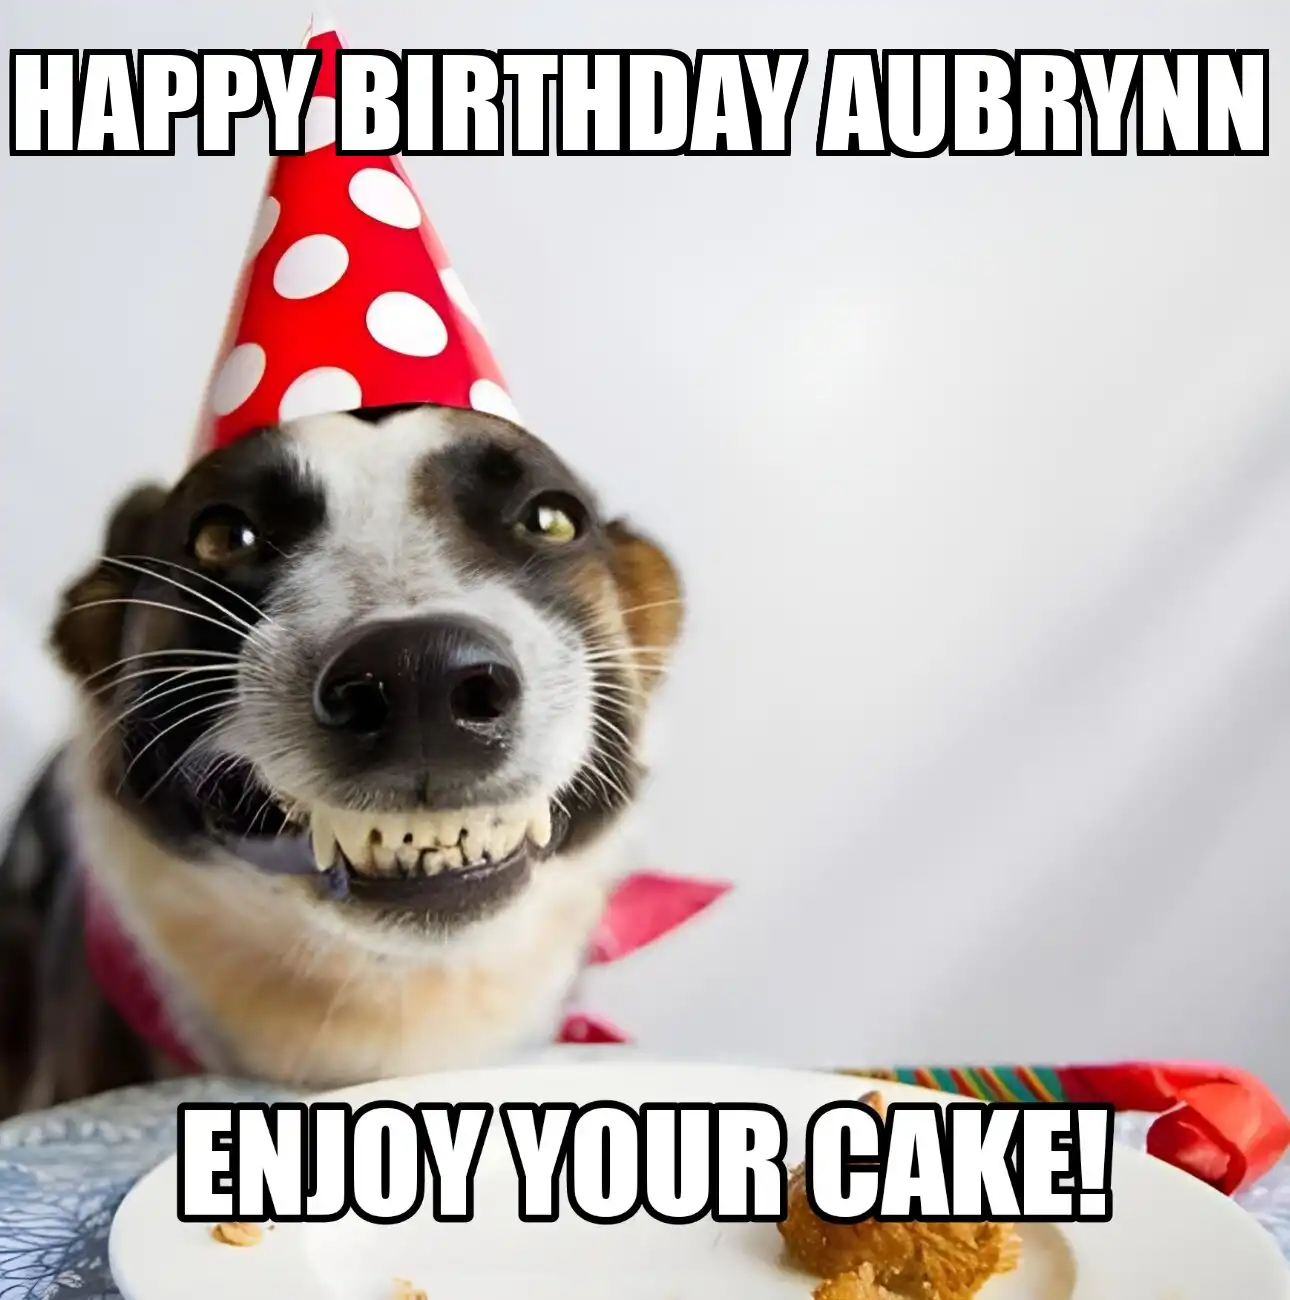 Happy Birthday Aubrynn Enjoy Your Cake Dog Meme